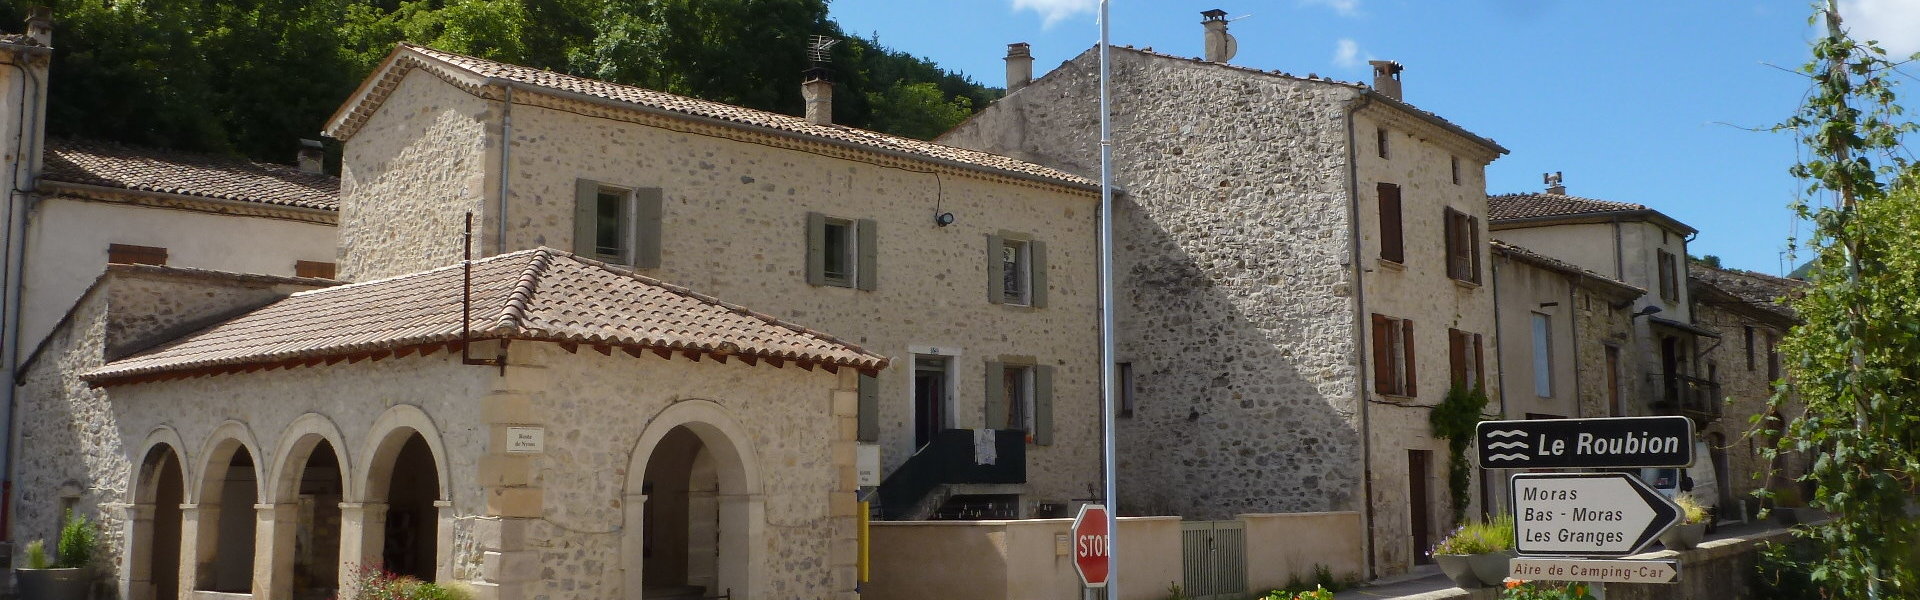 Communauté de communes de Dieulefit-Bourdeaux - Commune de Bouvières - Département de la Drôme